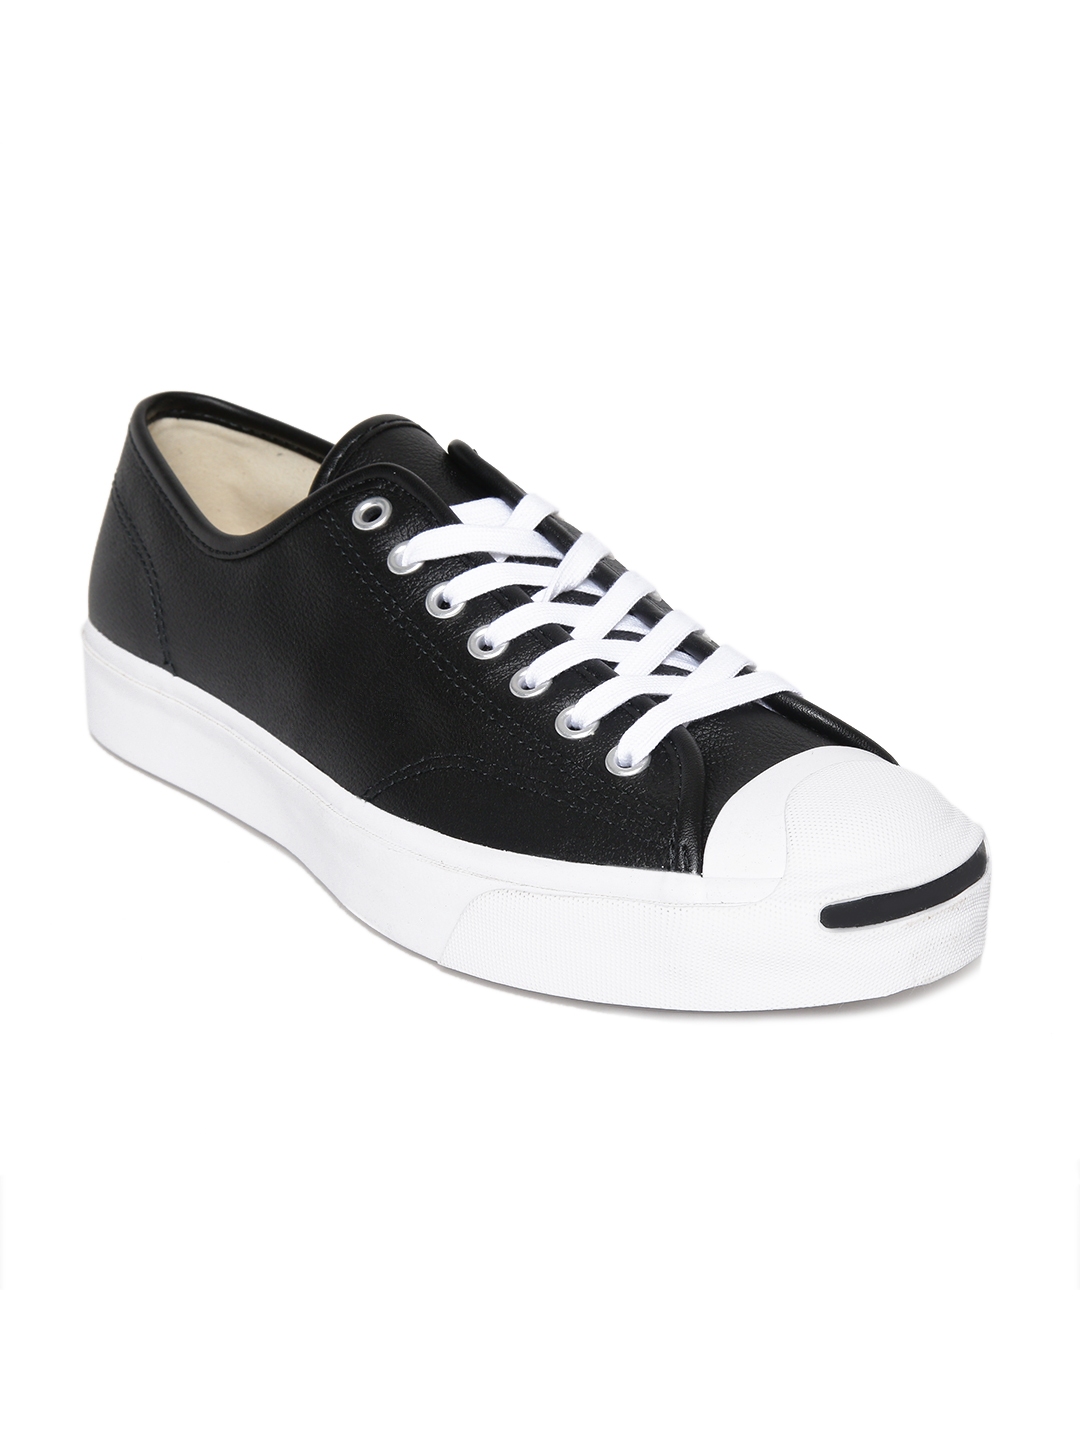 converse unisex black casual shoes